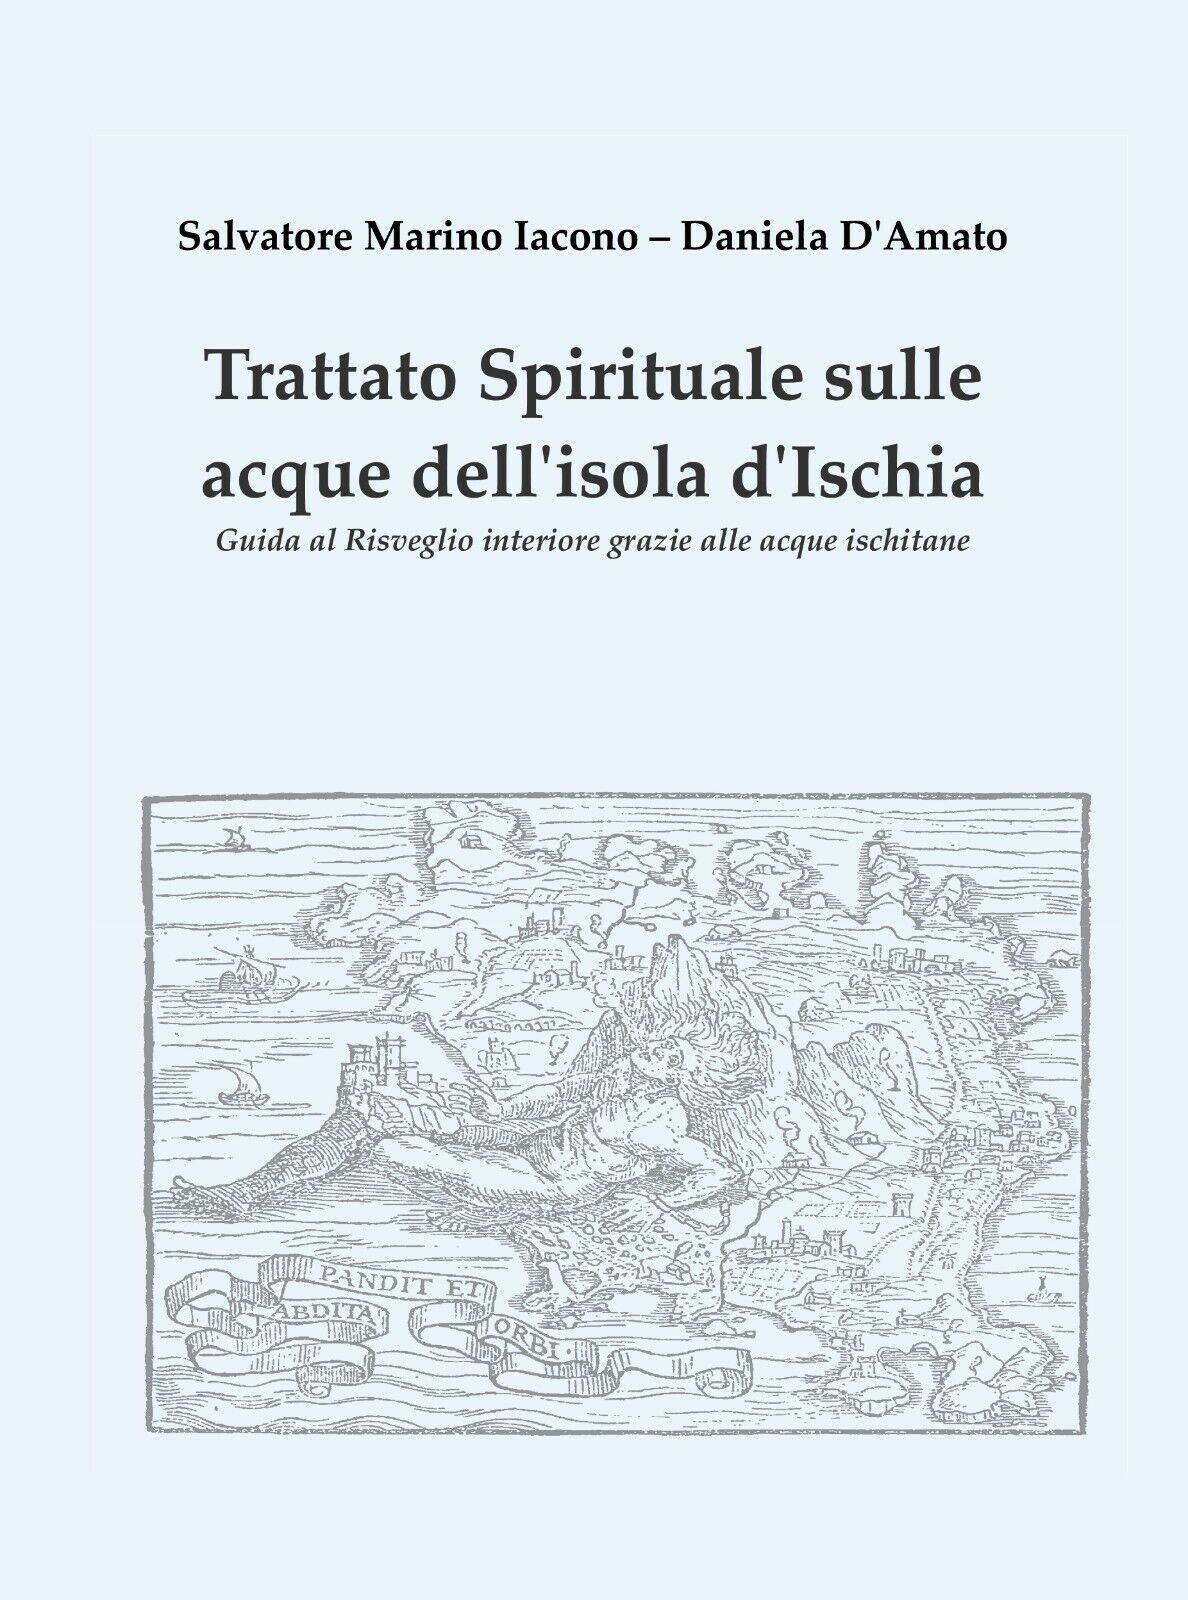 Trattato spirituale sulle acque delL'isola d'Ischia - Salvatore Marino Iacono, libro usato